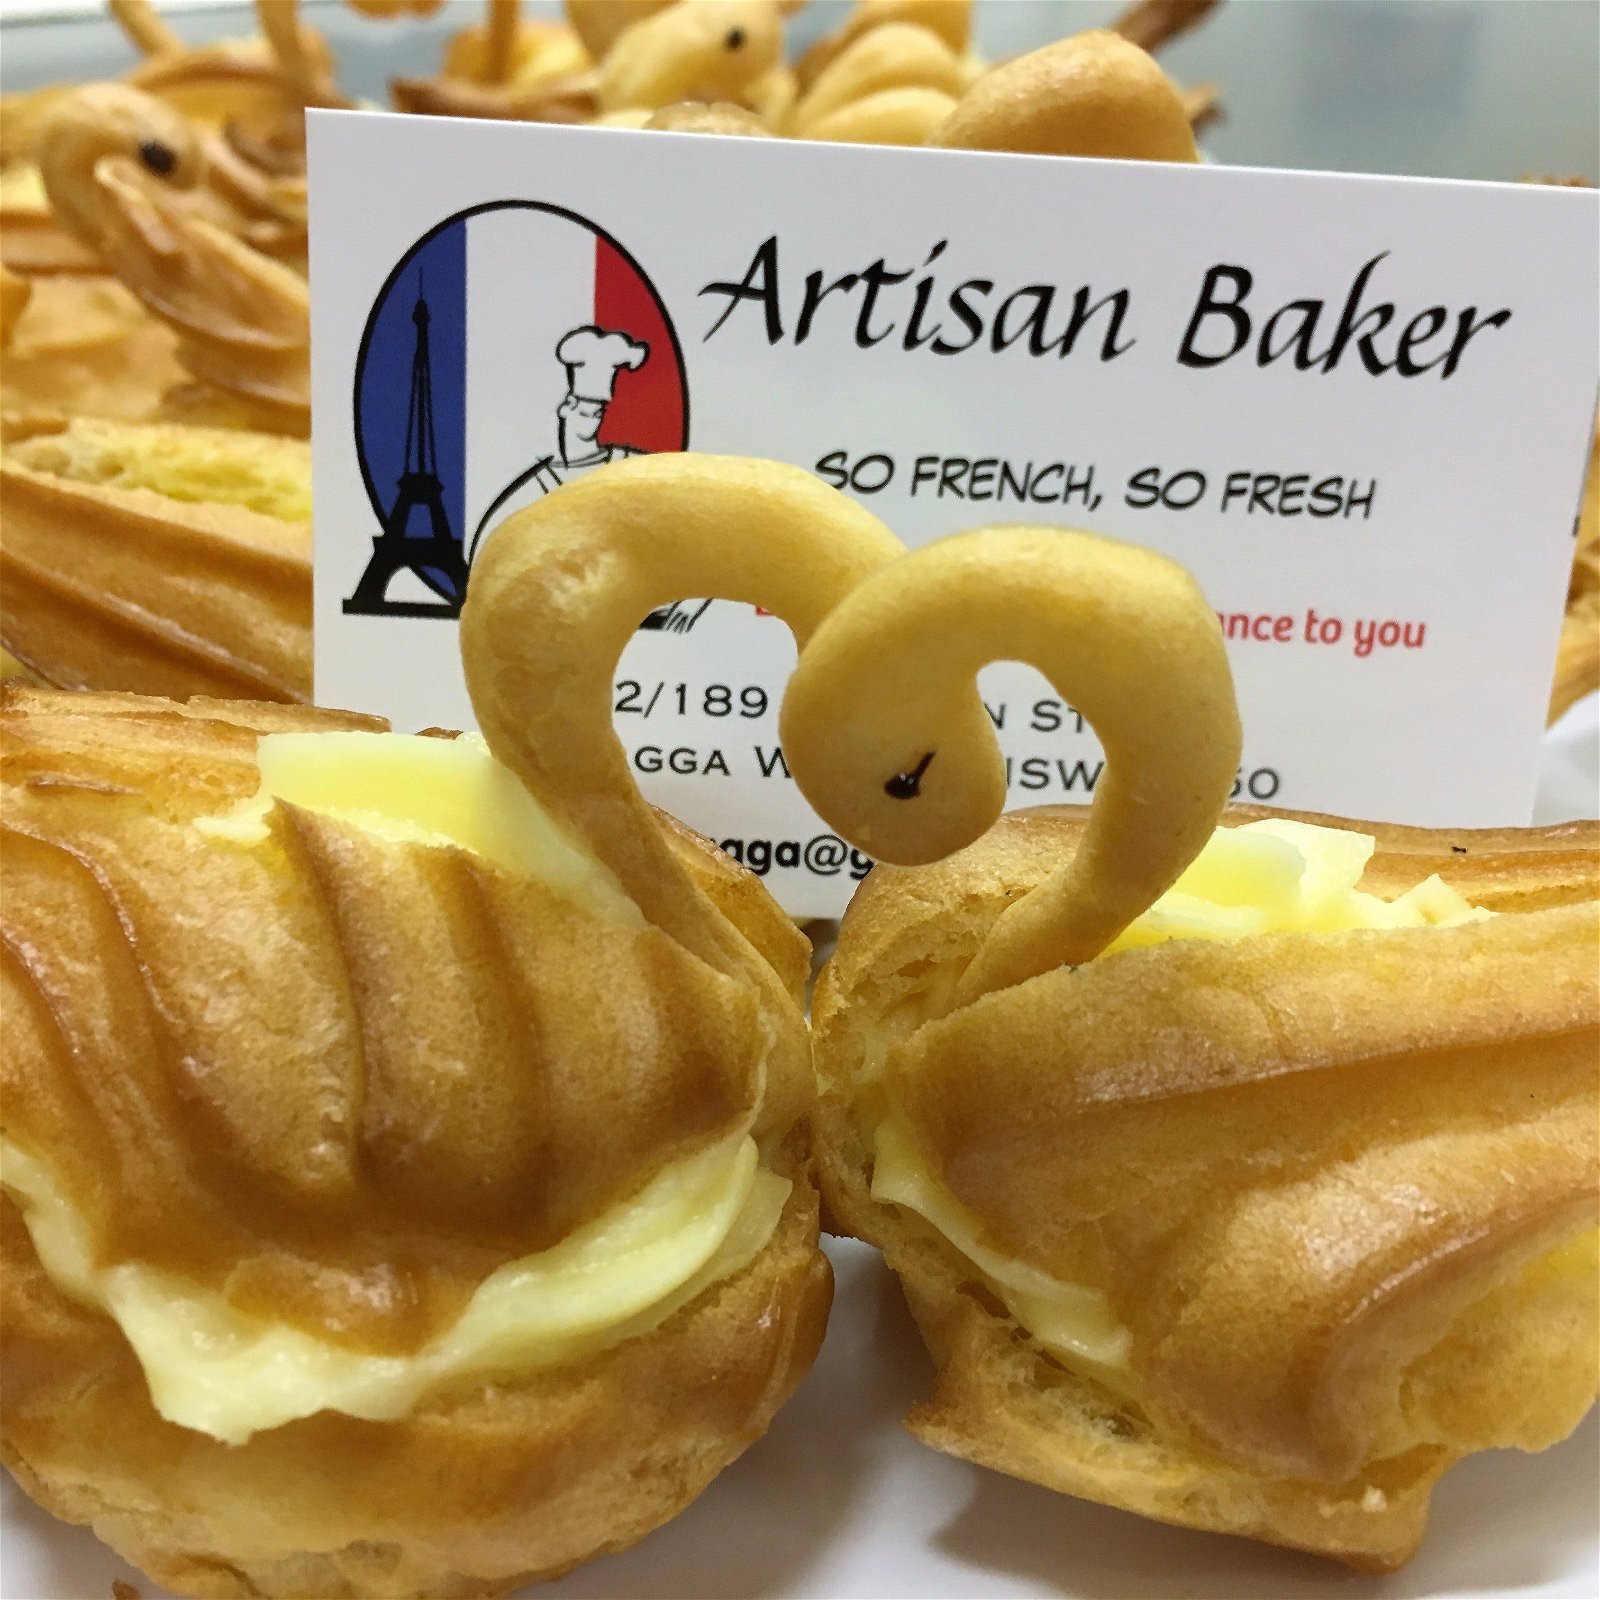 Artisan Baker - So French, So Fresh - thumb 2